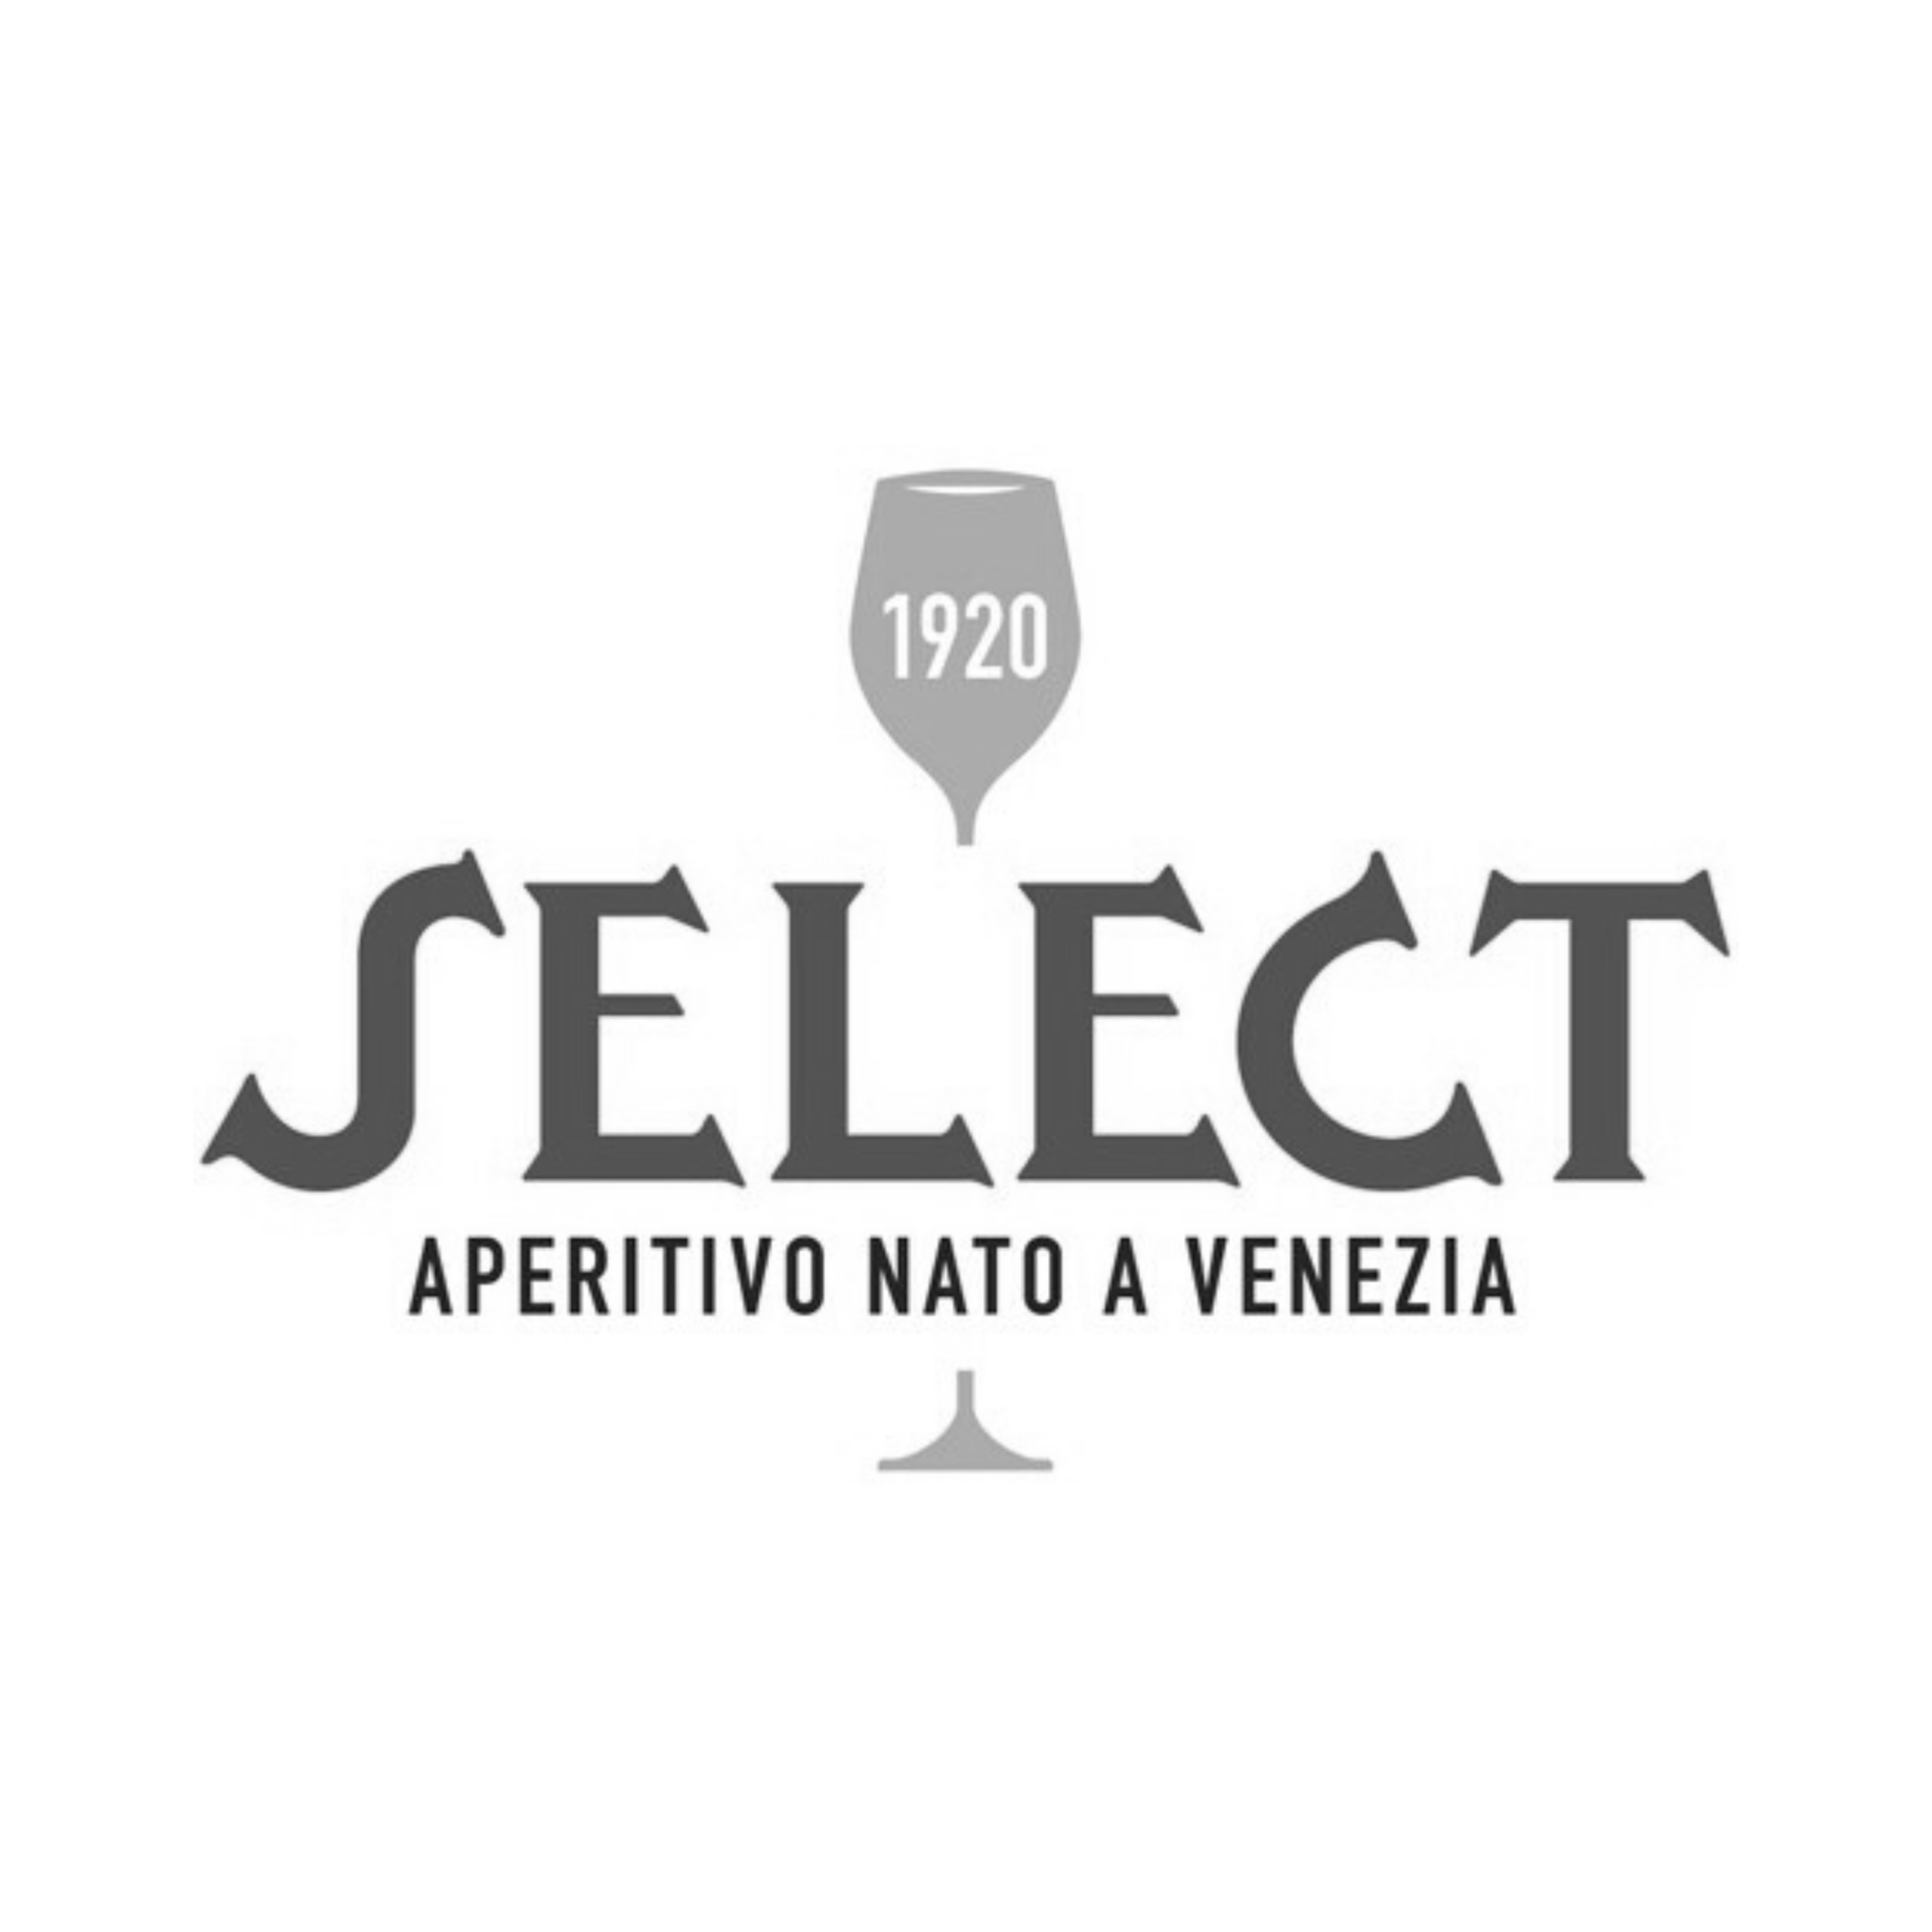 Select Aperitivo Logo